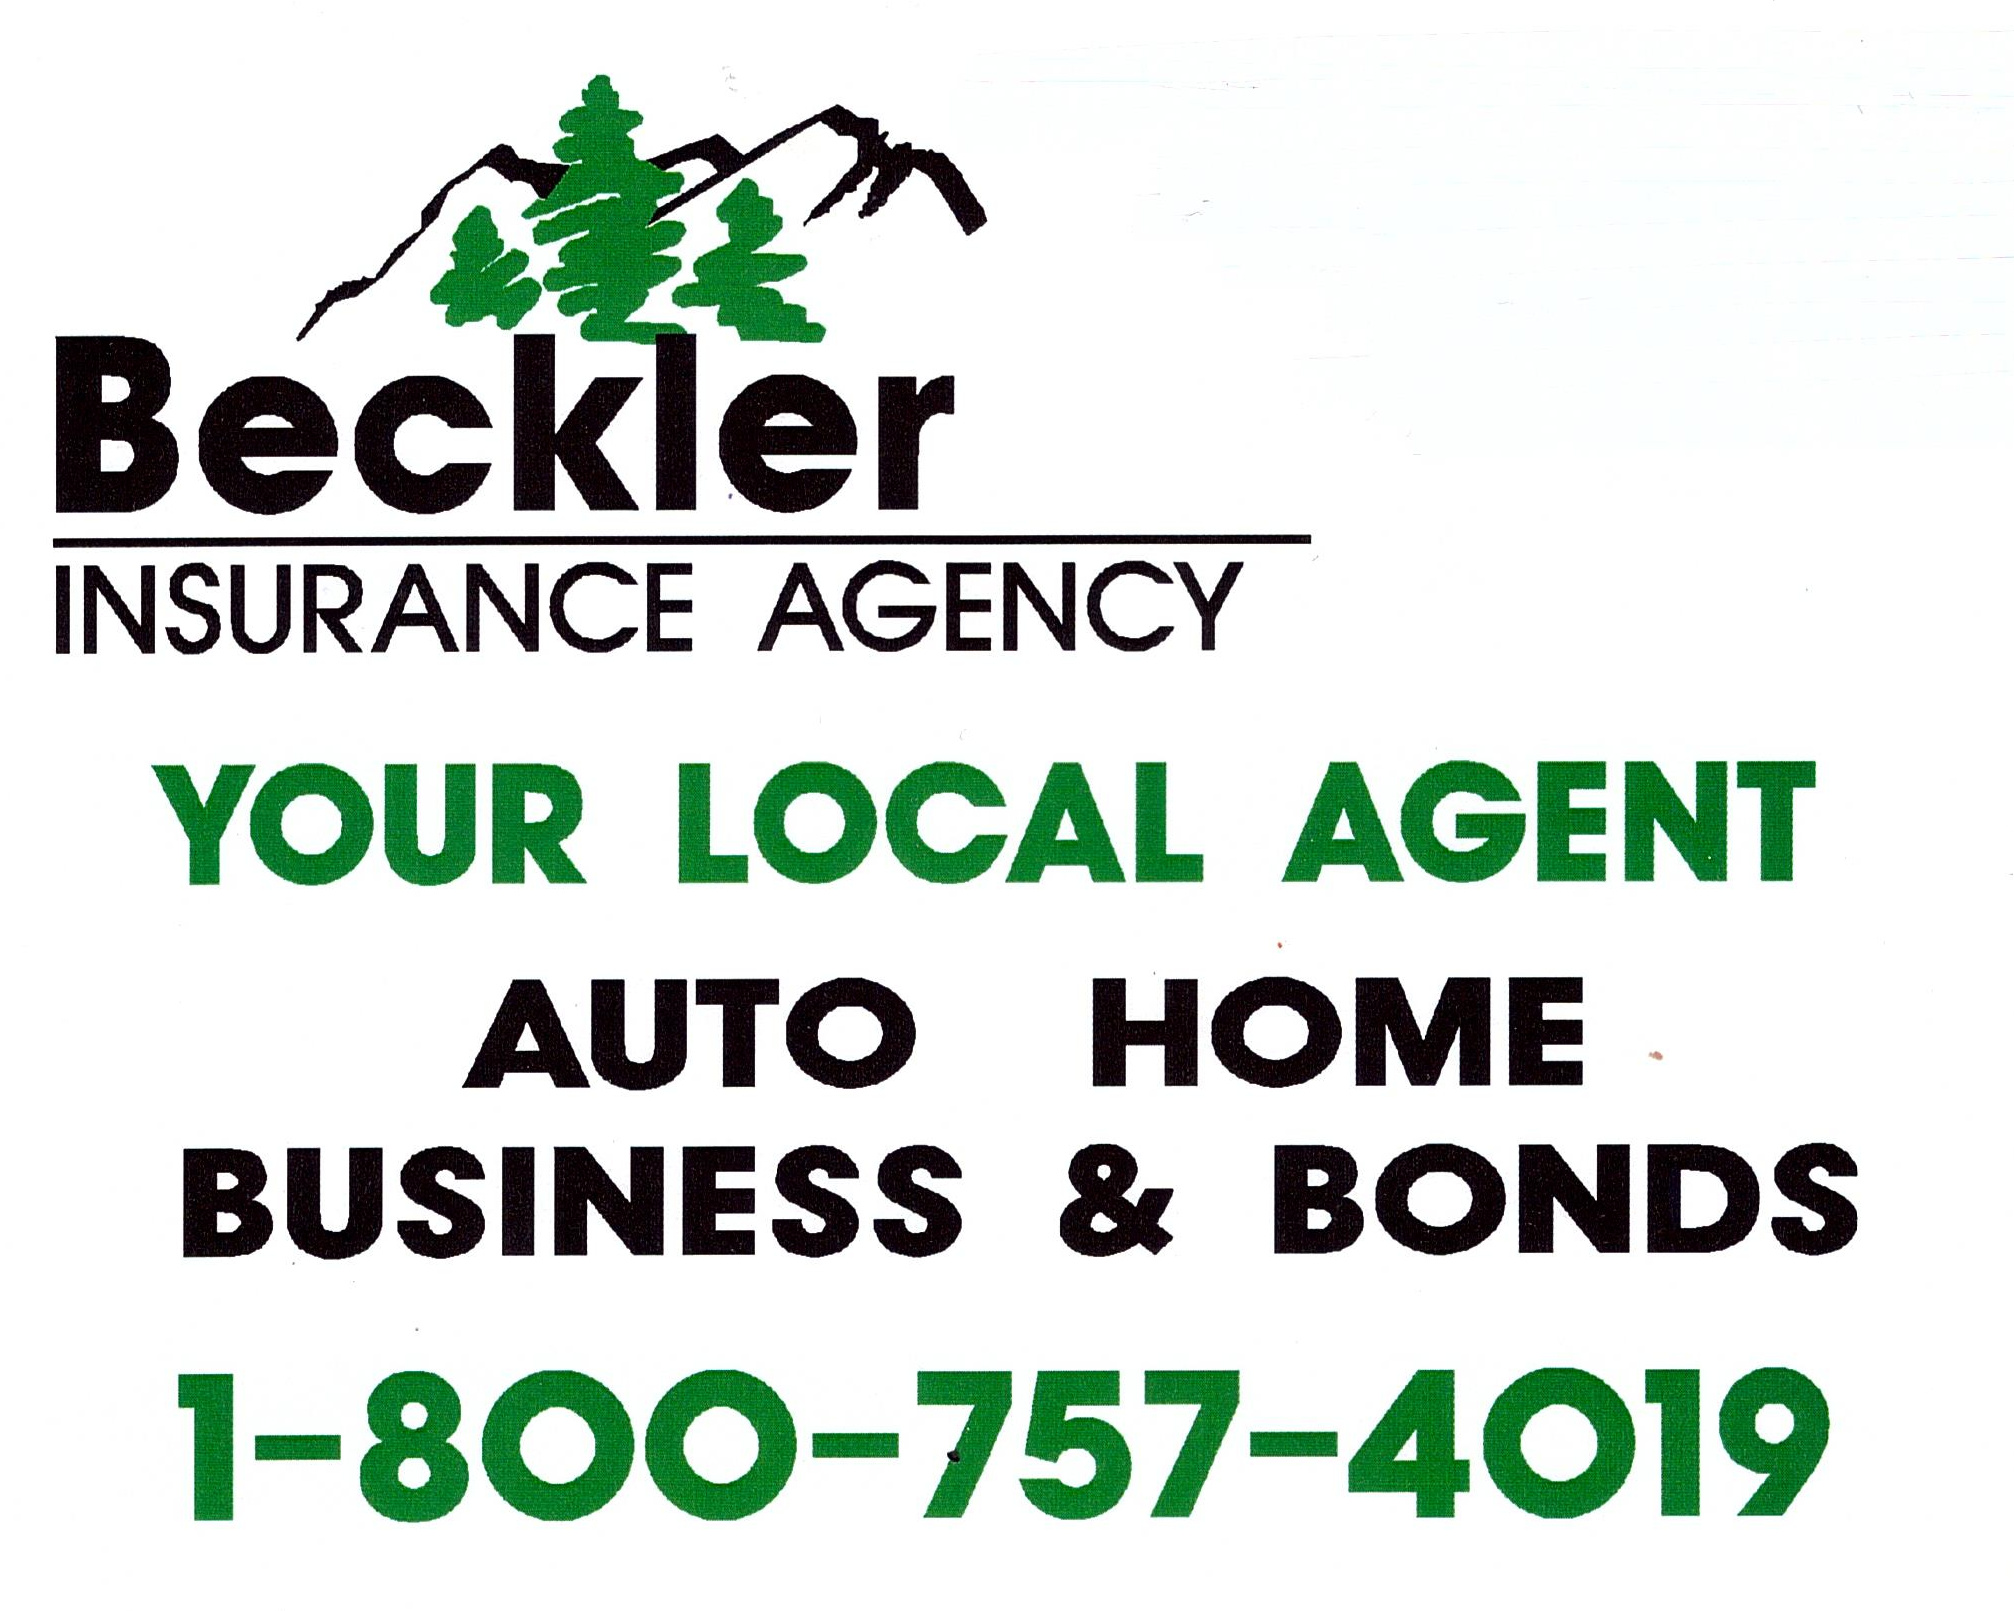 Beckler Insurance Agency